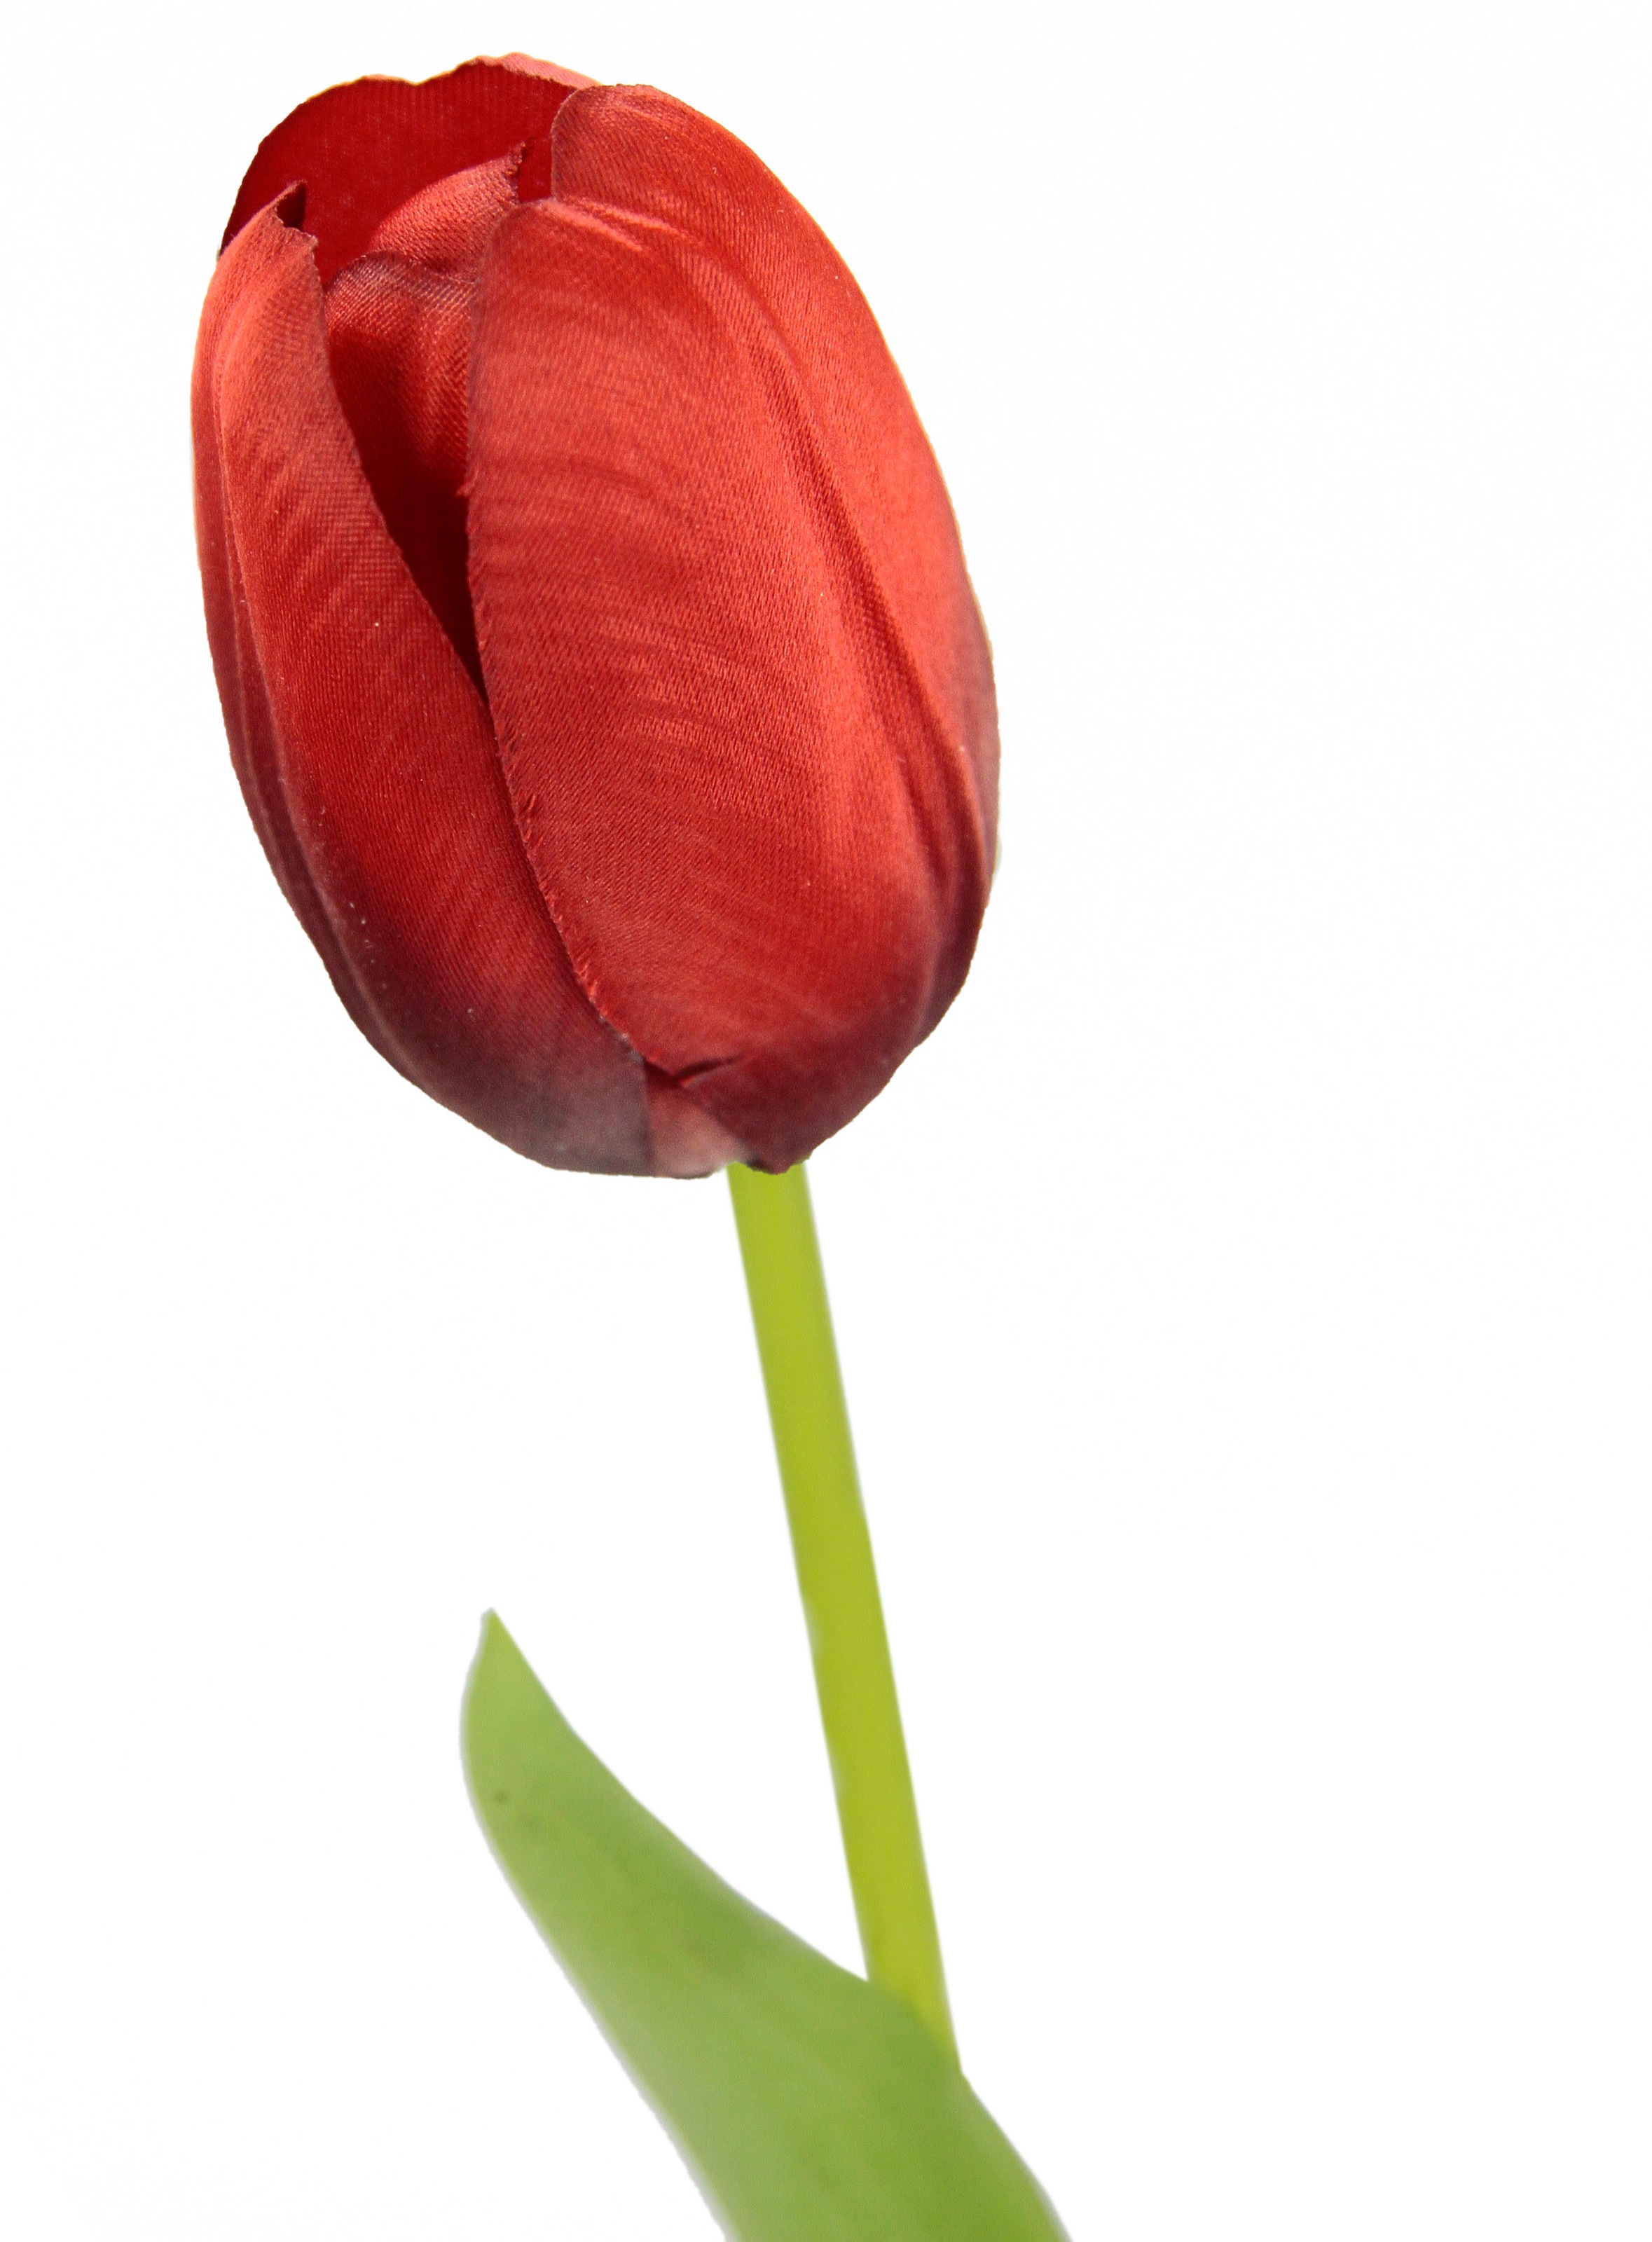 Kunstblumen, auf kaufen Tulpen«, künstliche I.GE.A. Tulpenknospen, Stielblume 5er Raten »Real Set Touch Kunstblume